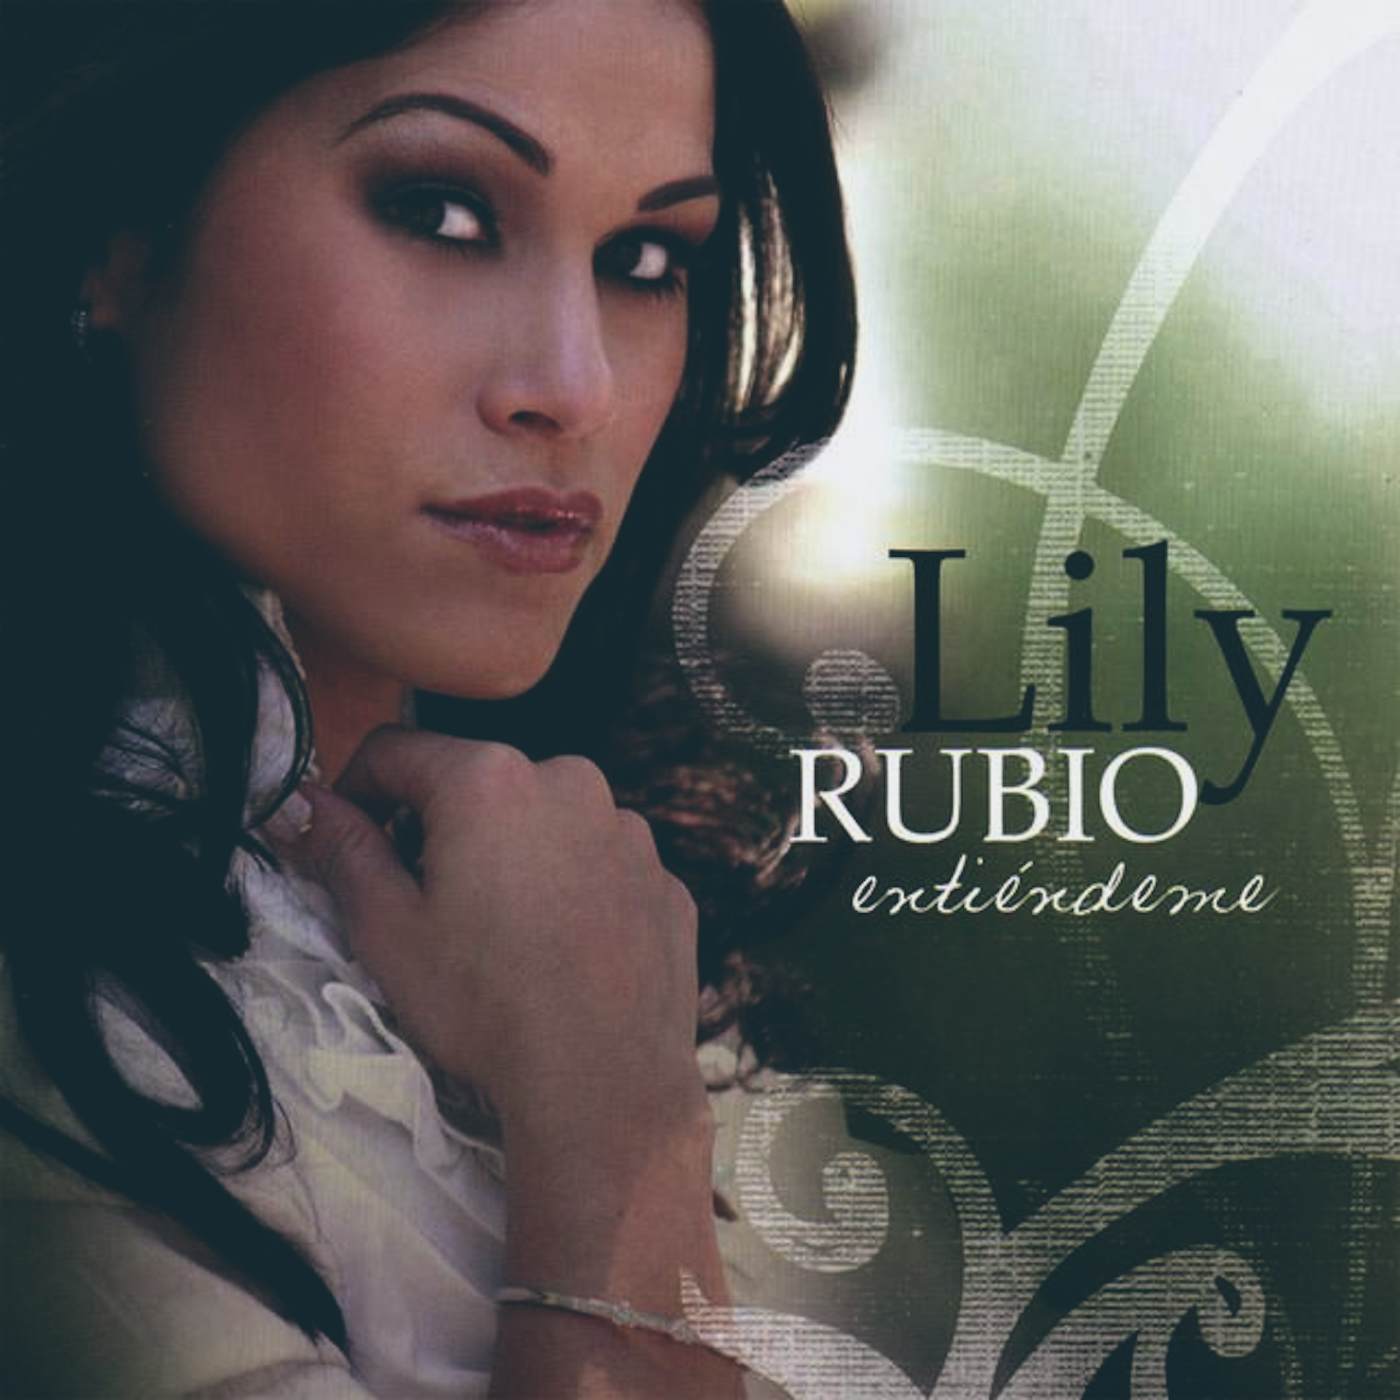 Lily Rubio